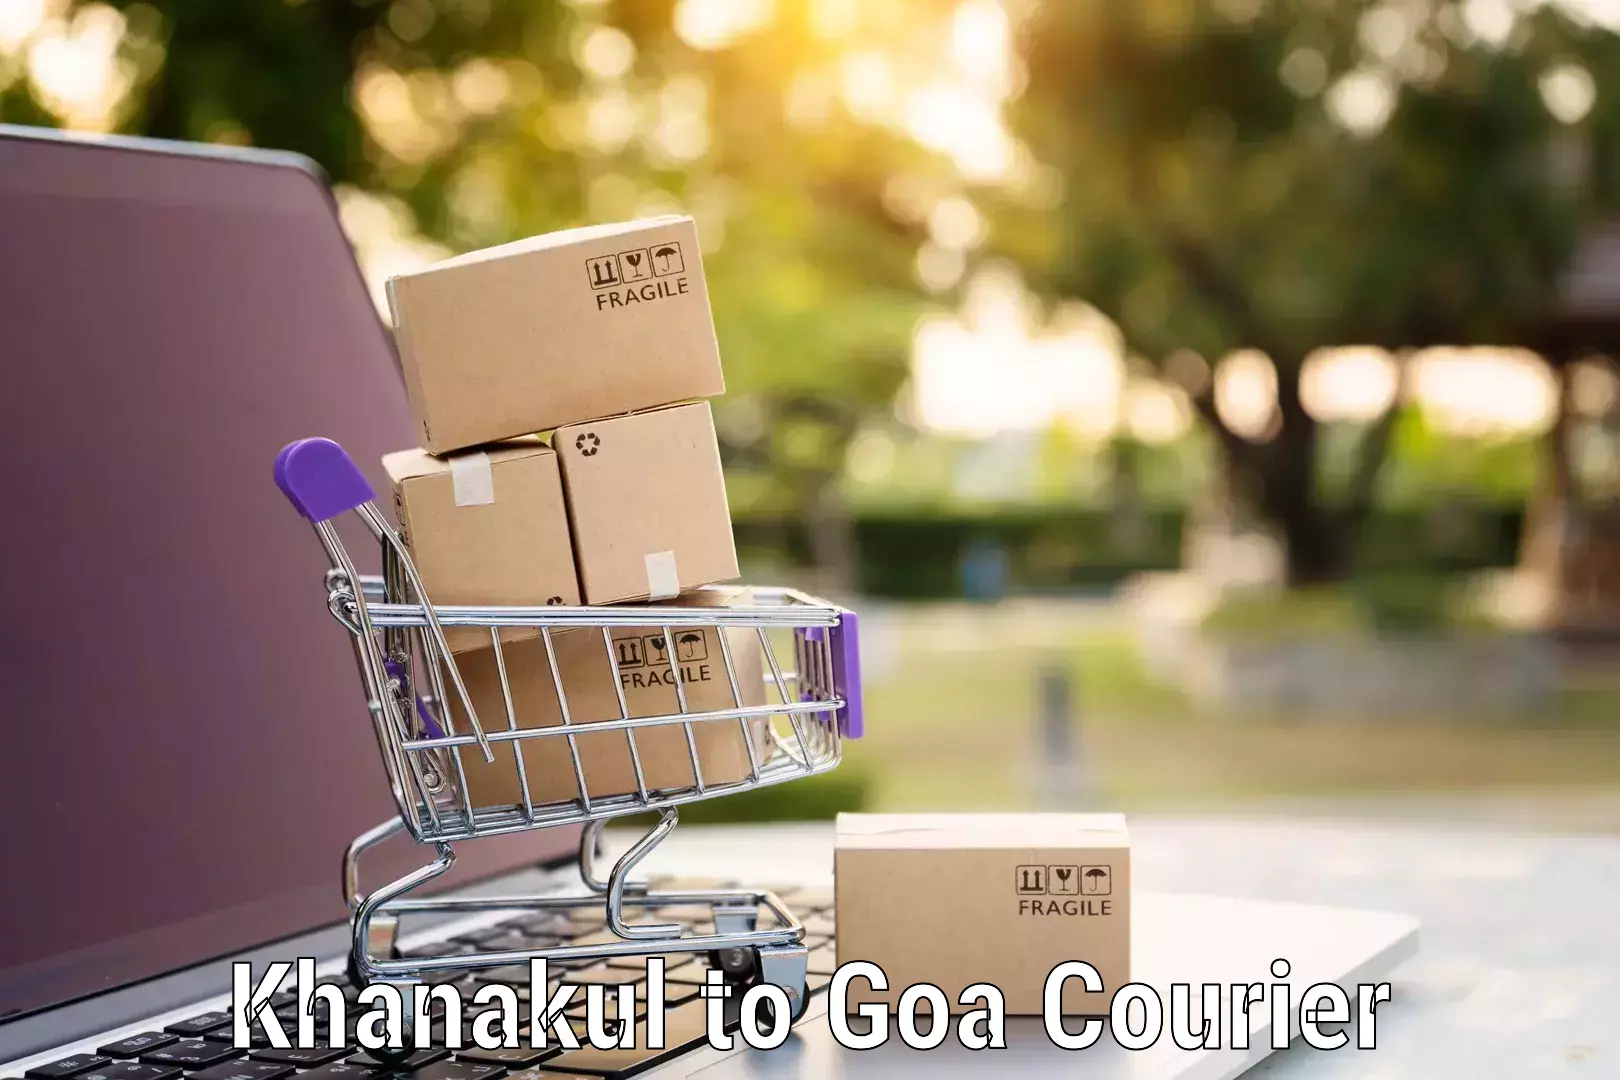 Home moving specialists Khanakul to Goa